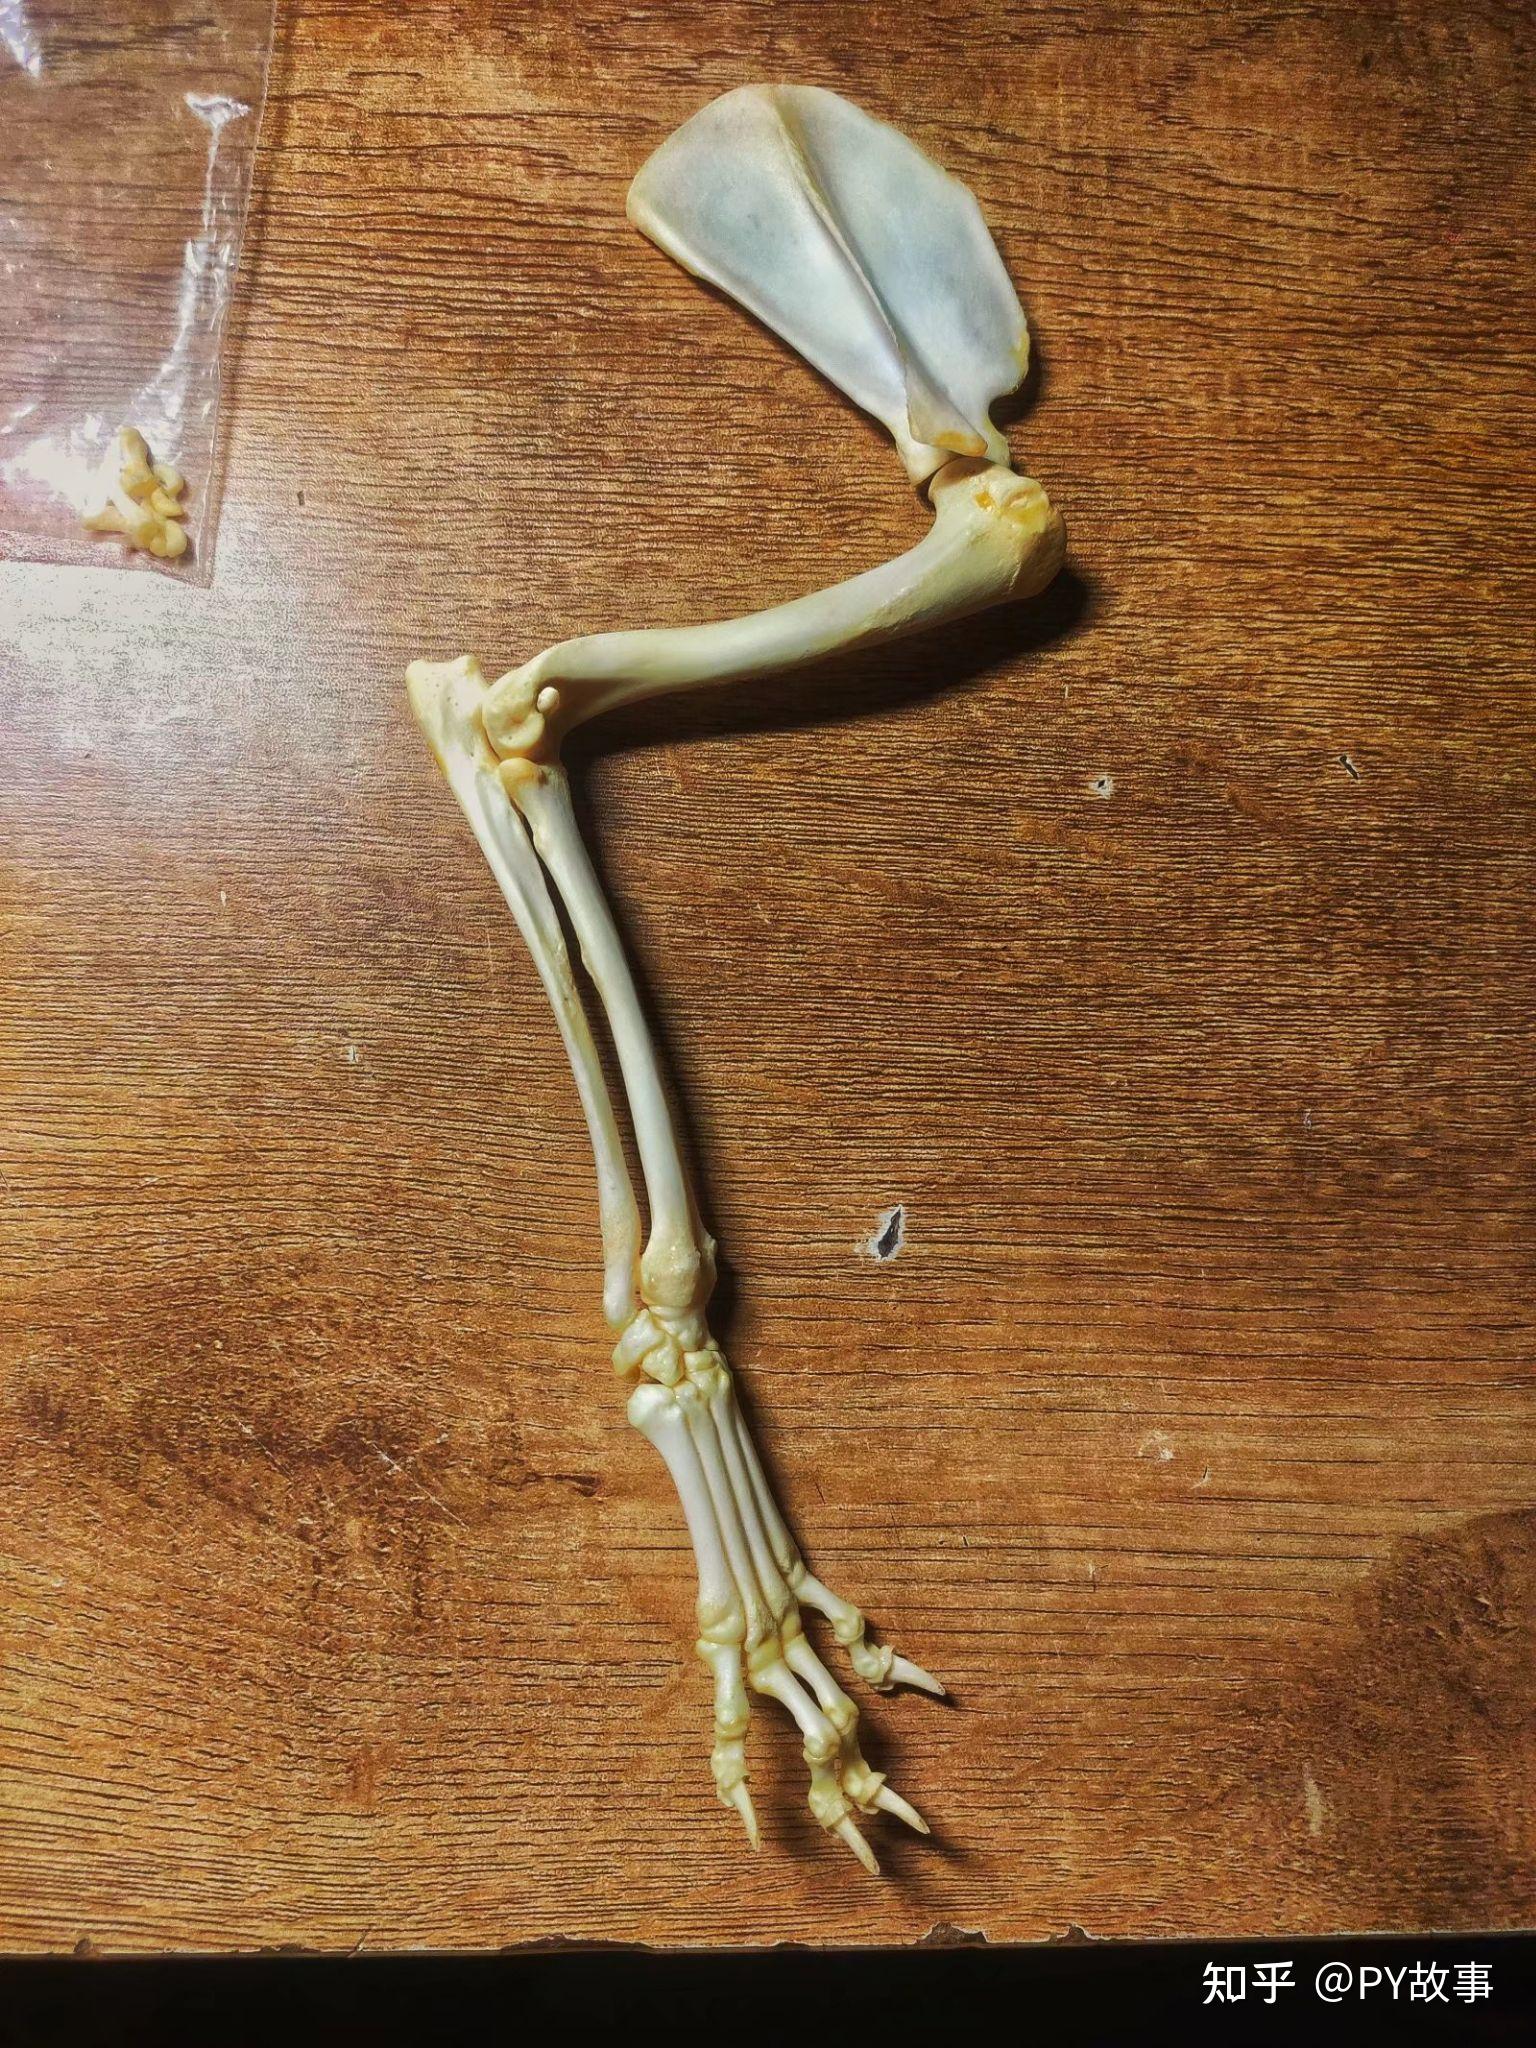 中小型哺乳动物骨骼标本制作方法